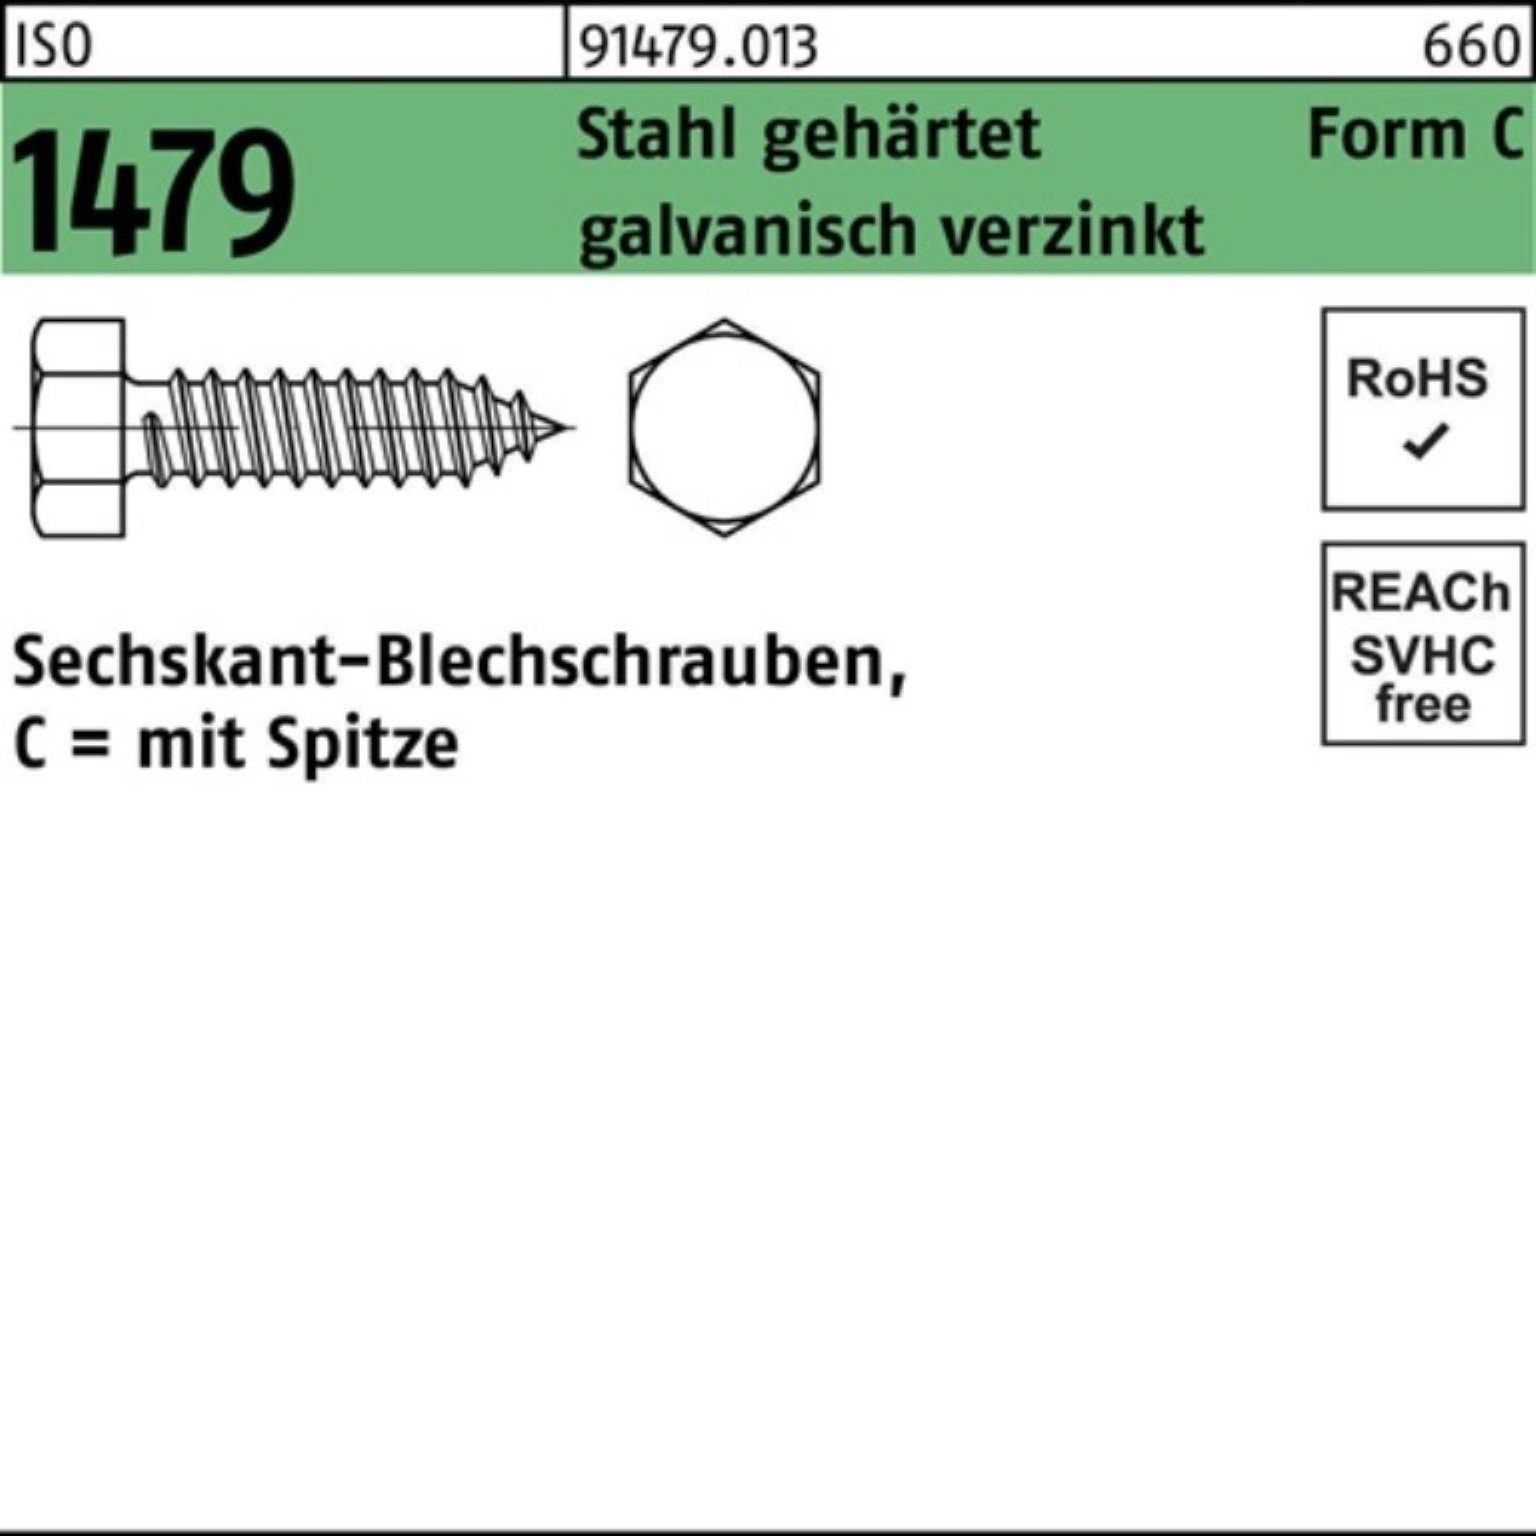 gehärt Spitze/6-kt 1479 Reyher Pack Blechschraube 2000er 2,9x9,5 Stahl C ISO Blechschraube